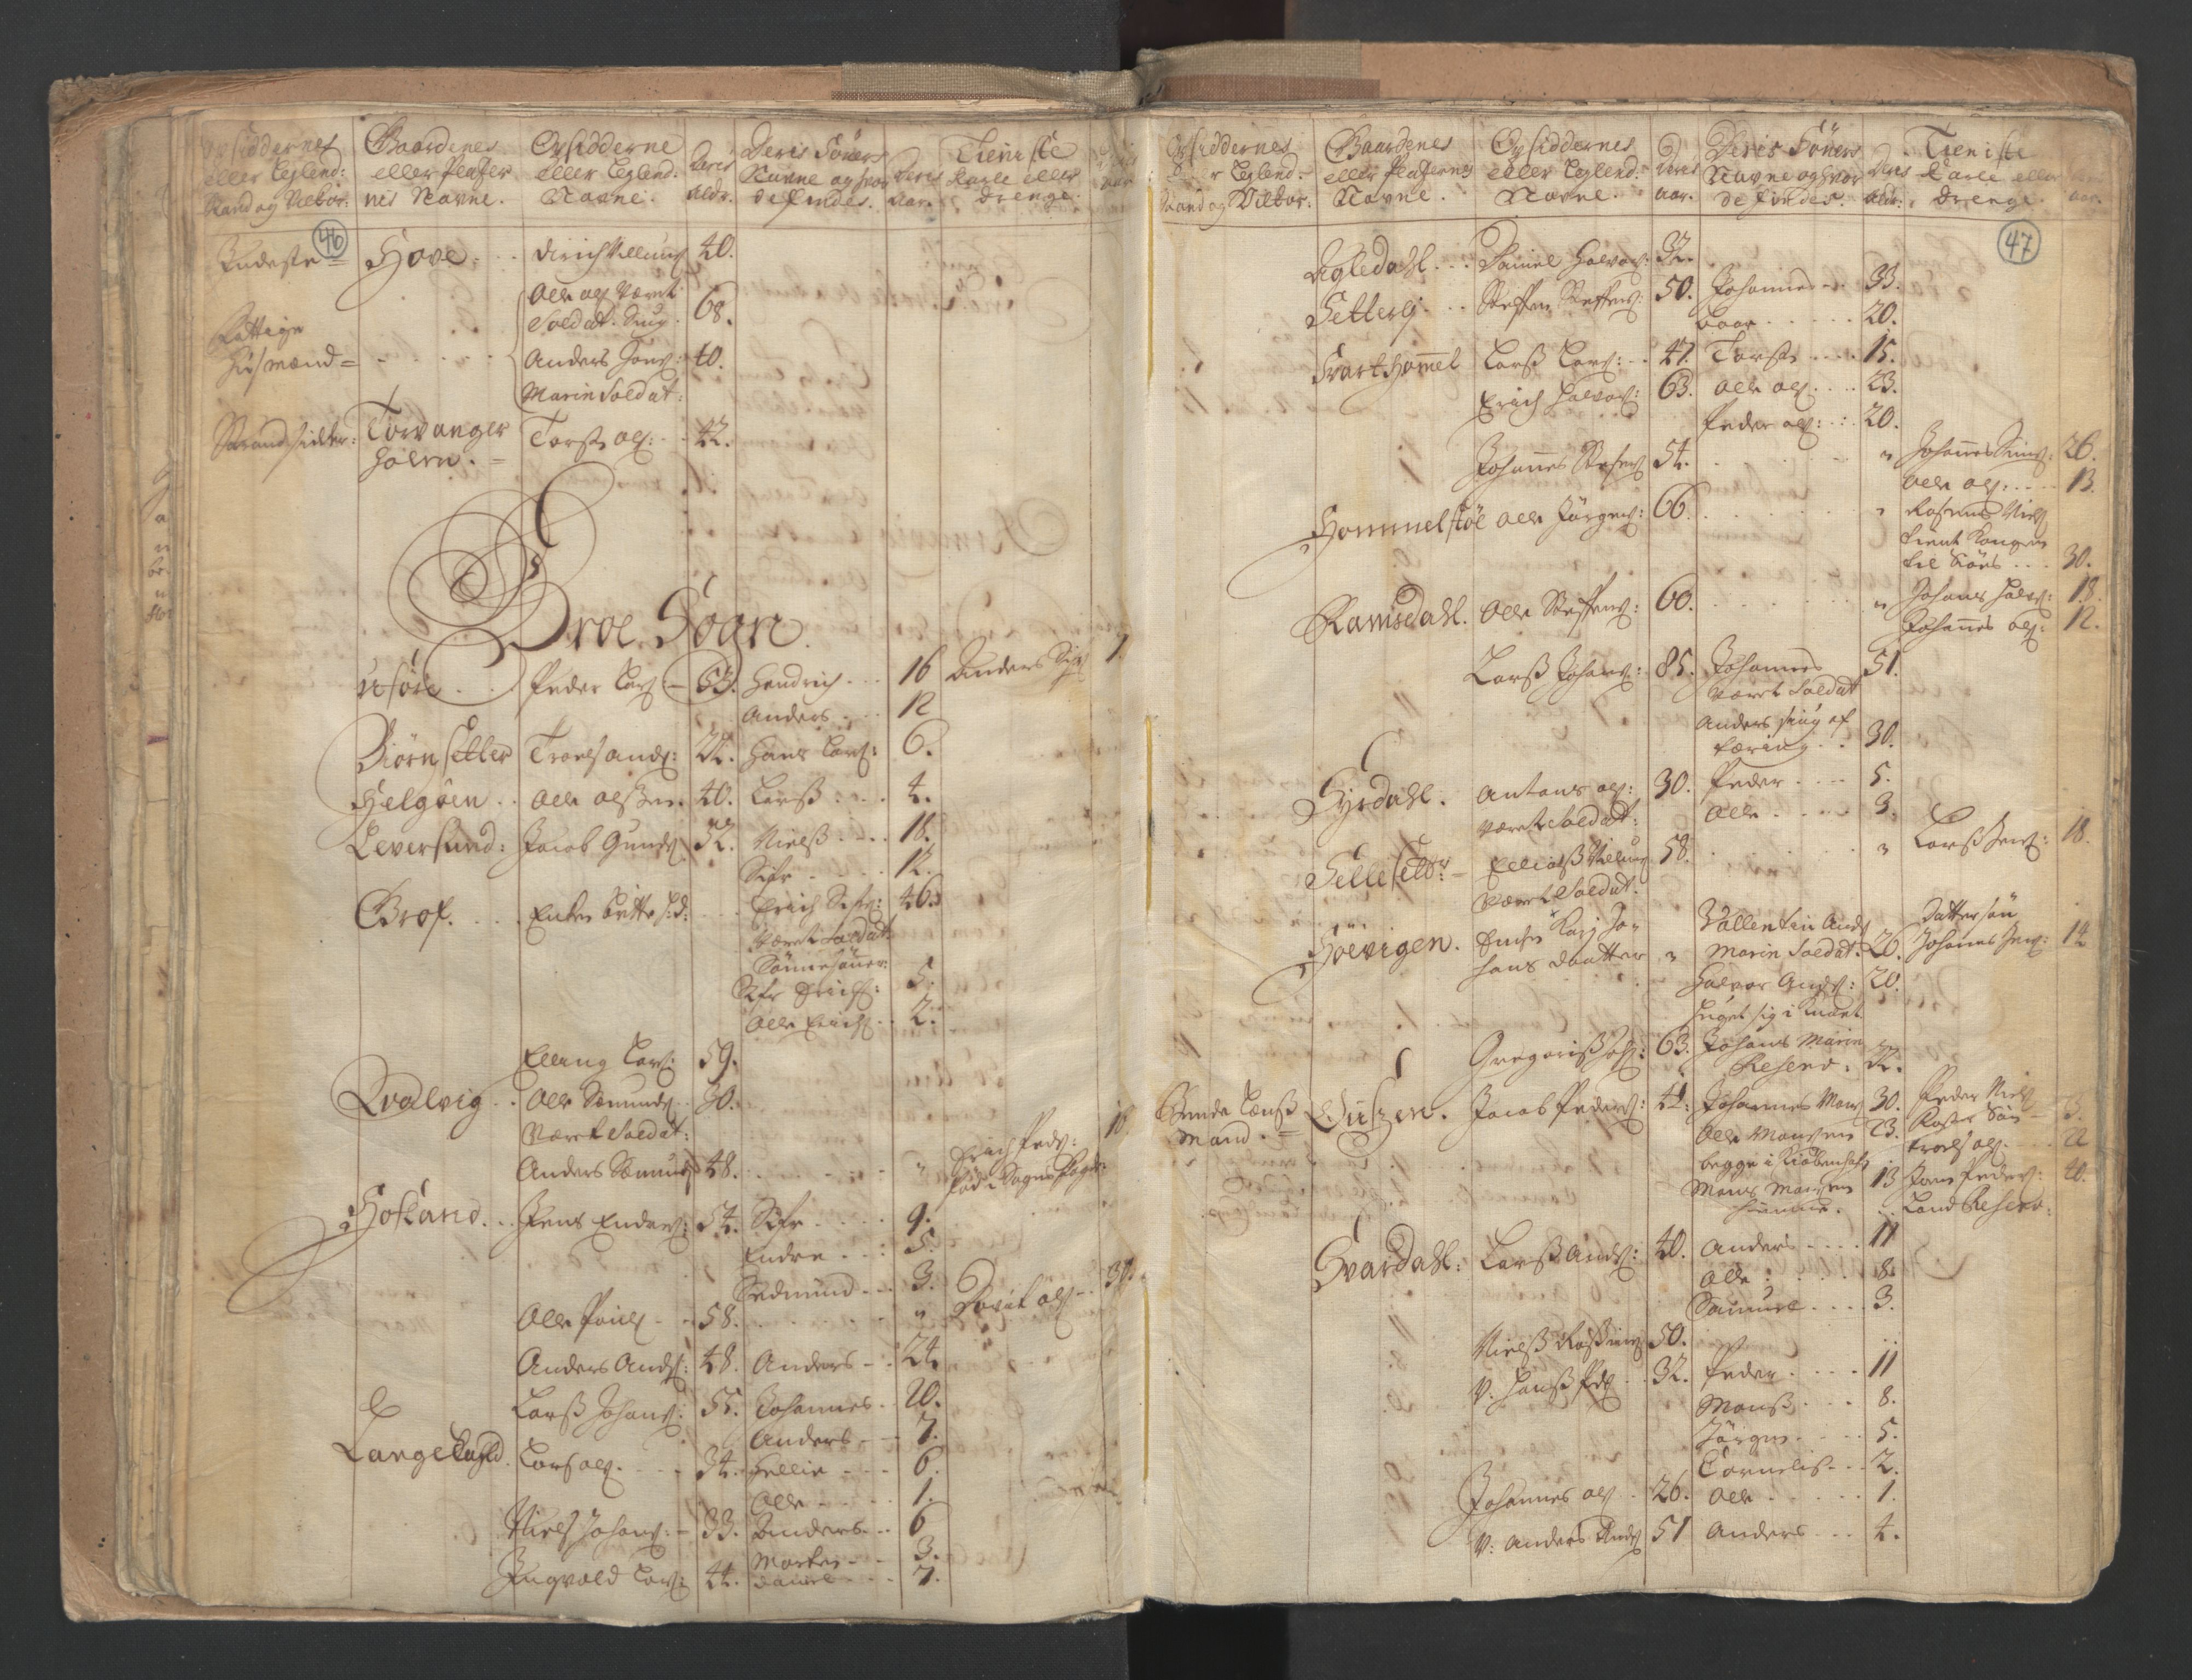 RA, Census (manntall) 1701, no. 9: Sunnfjord fogderi, Nordfjord fogderi and Svanø birk, 1701, p. 46-47